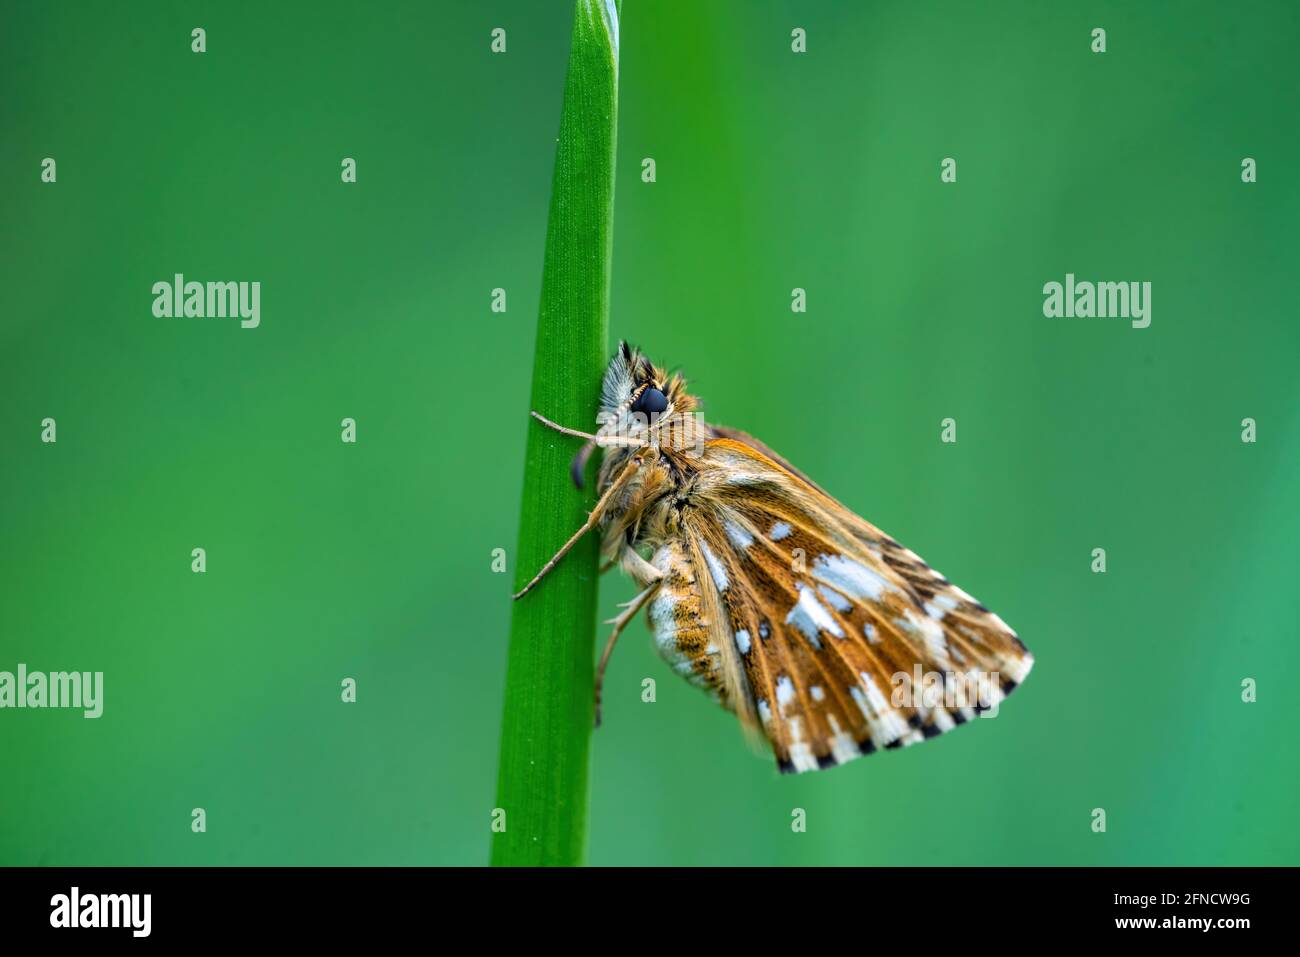 Makroaufnahme eines schlafenden Schmetterlings mit orangefarbenen und weißen Flügeln, die auf einem Grasstrand thronen. Isoliert auf grünem Hintergrund. Geringe Schärfentiefe Stockfoto